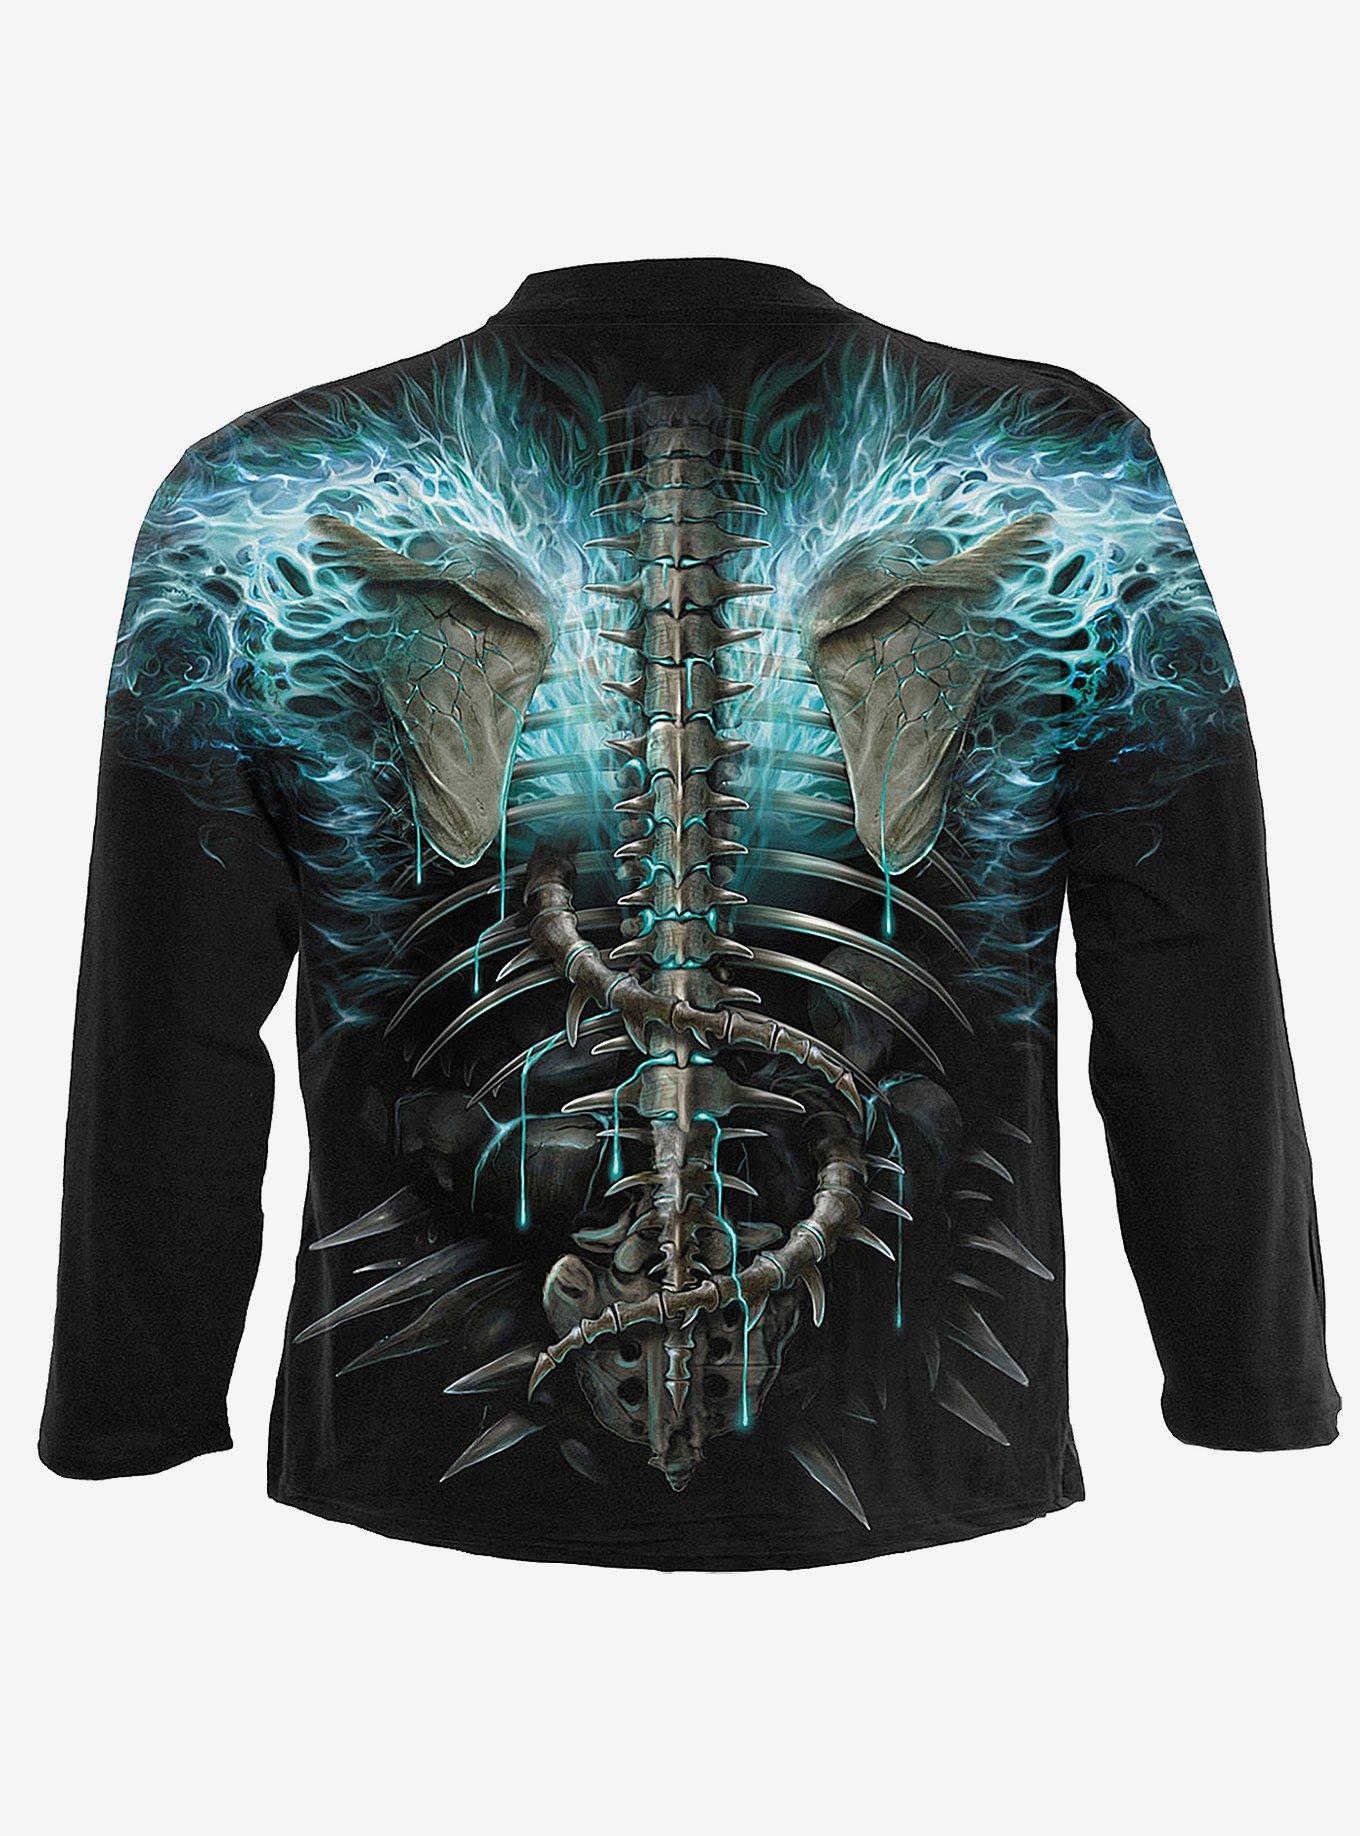 Flaming Spine Allover Long-Sleeve T-Shirt, BLACK, alternate